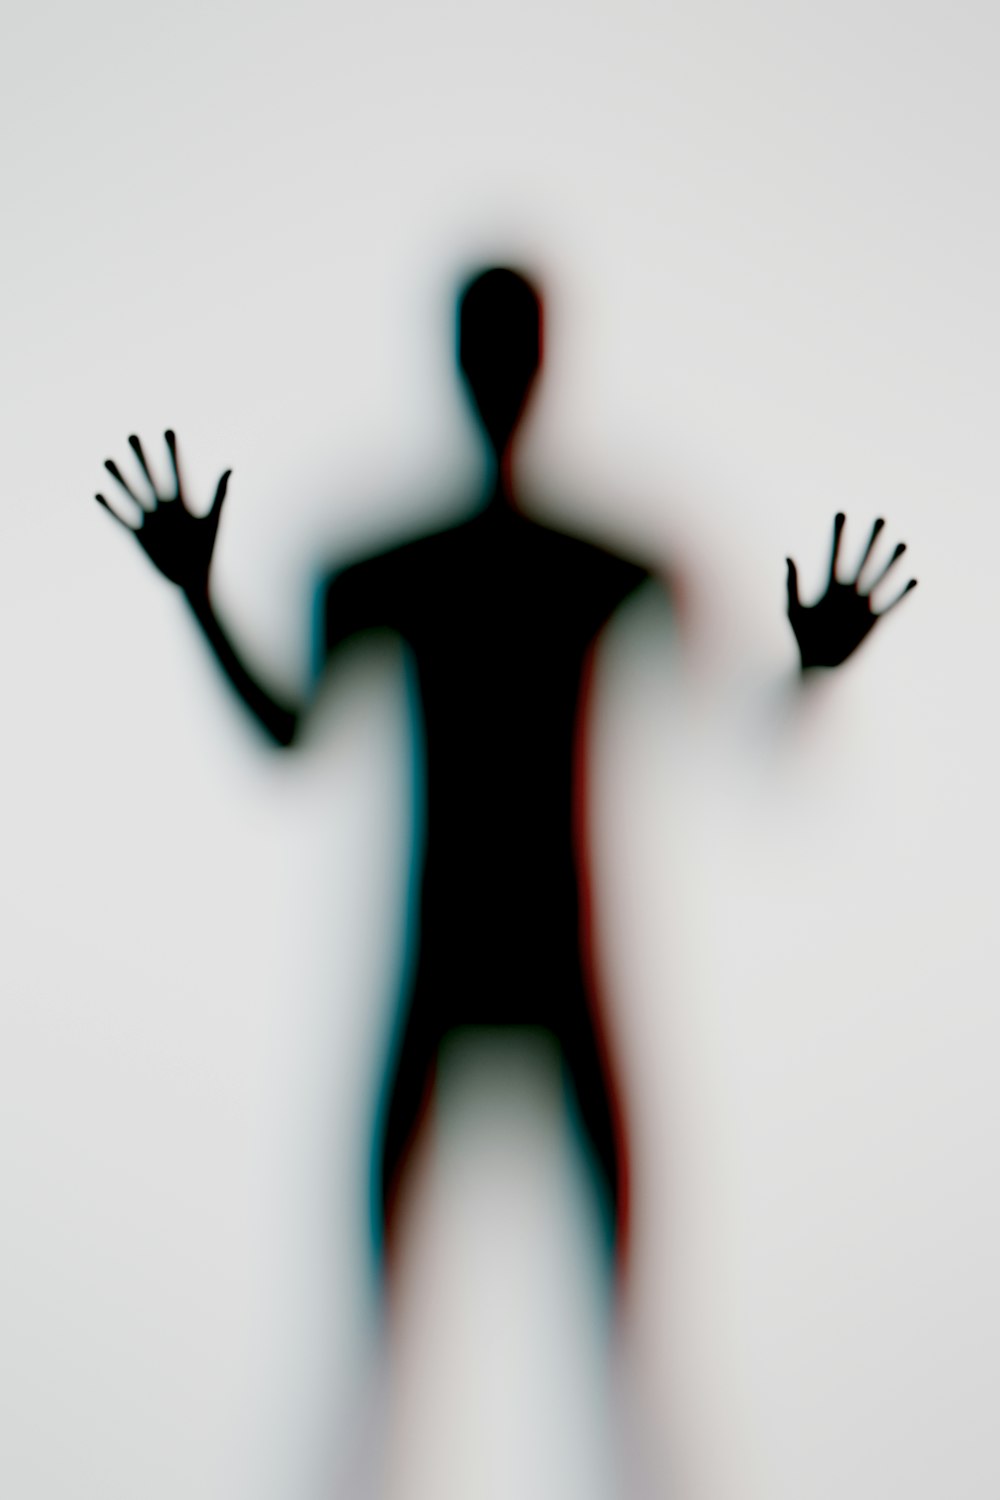 L’ombre d’un homme avec ses mains tendues